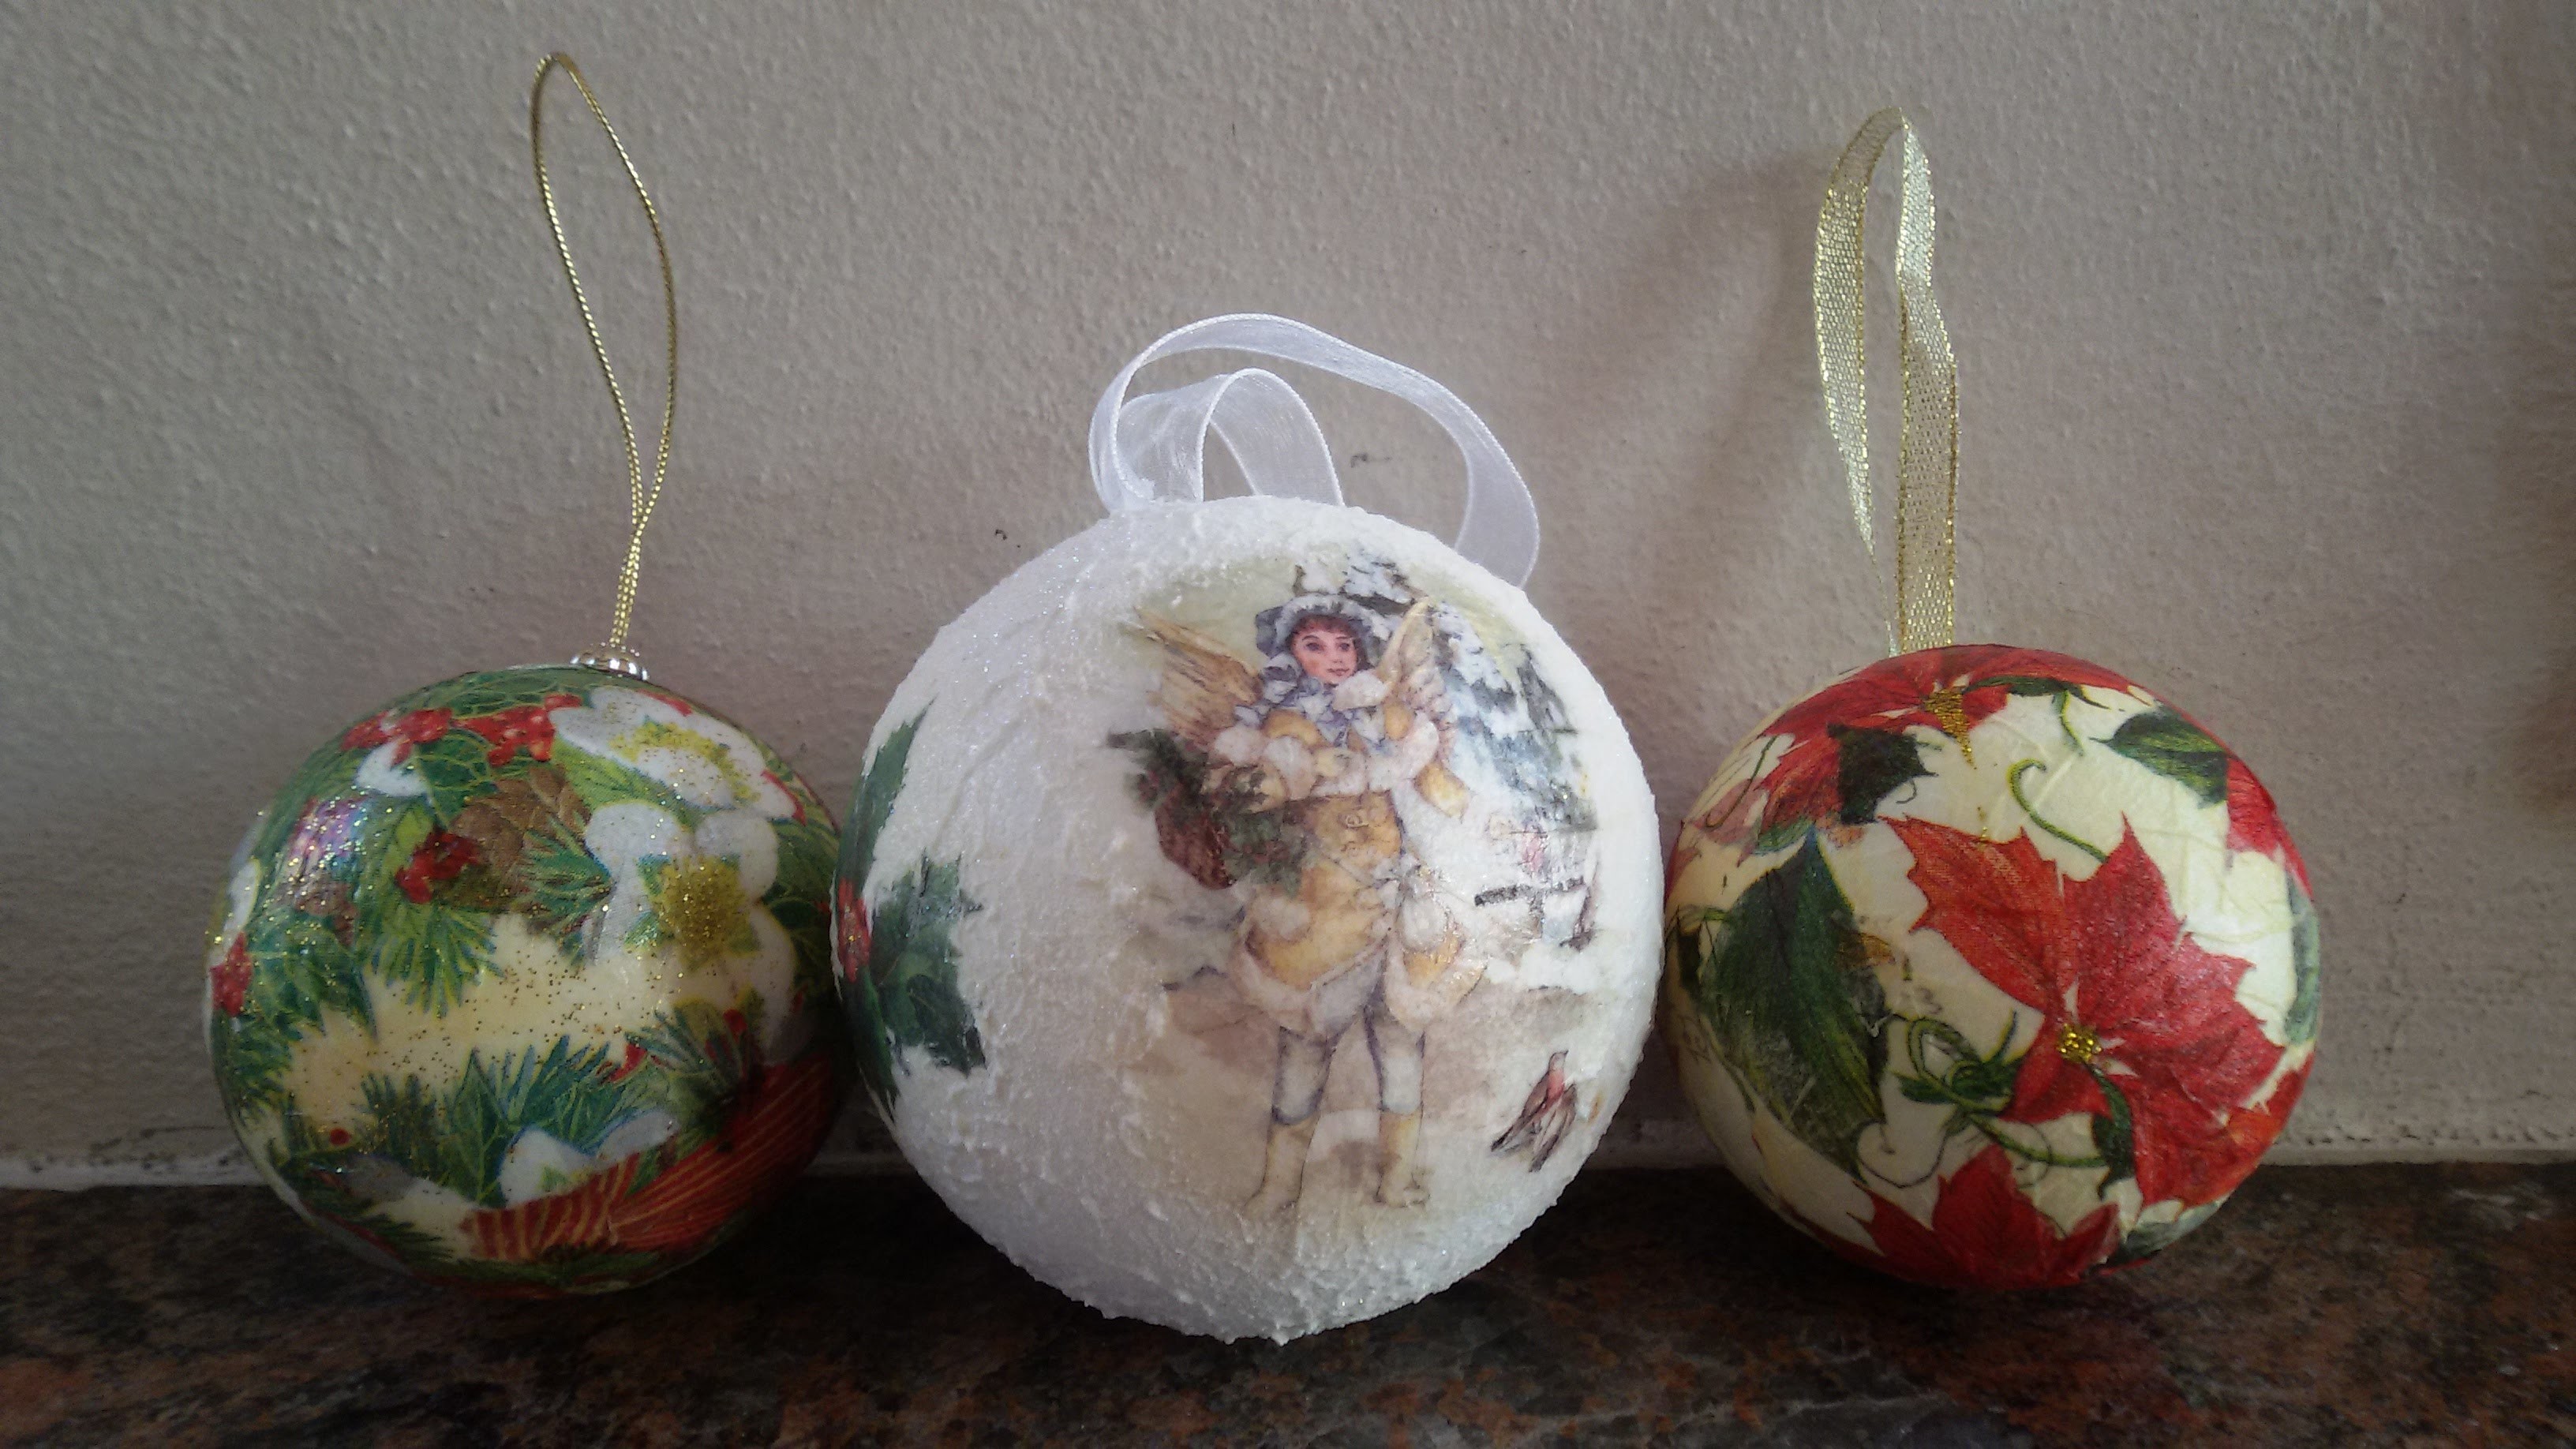 Tutorial sfere in polistirolo come decorazione per l'albero di natale  Tutorial christmas balls